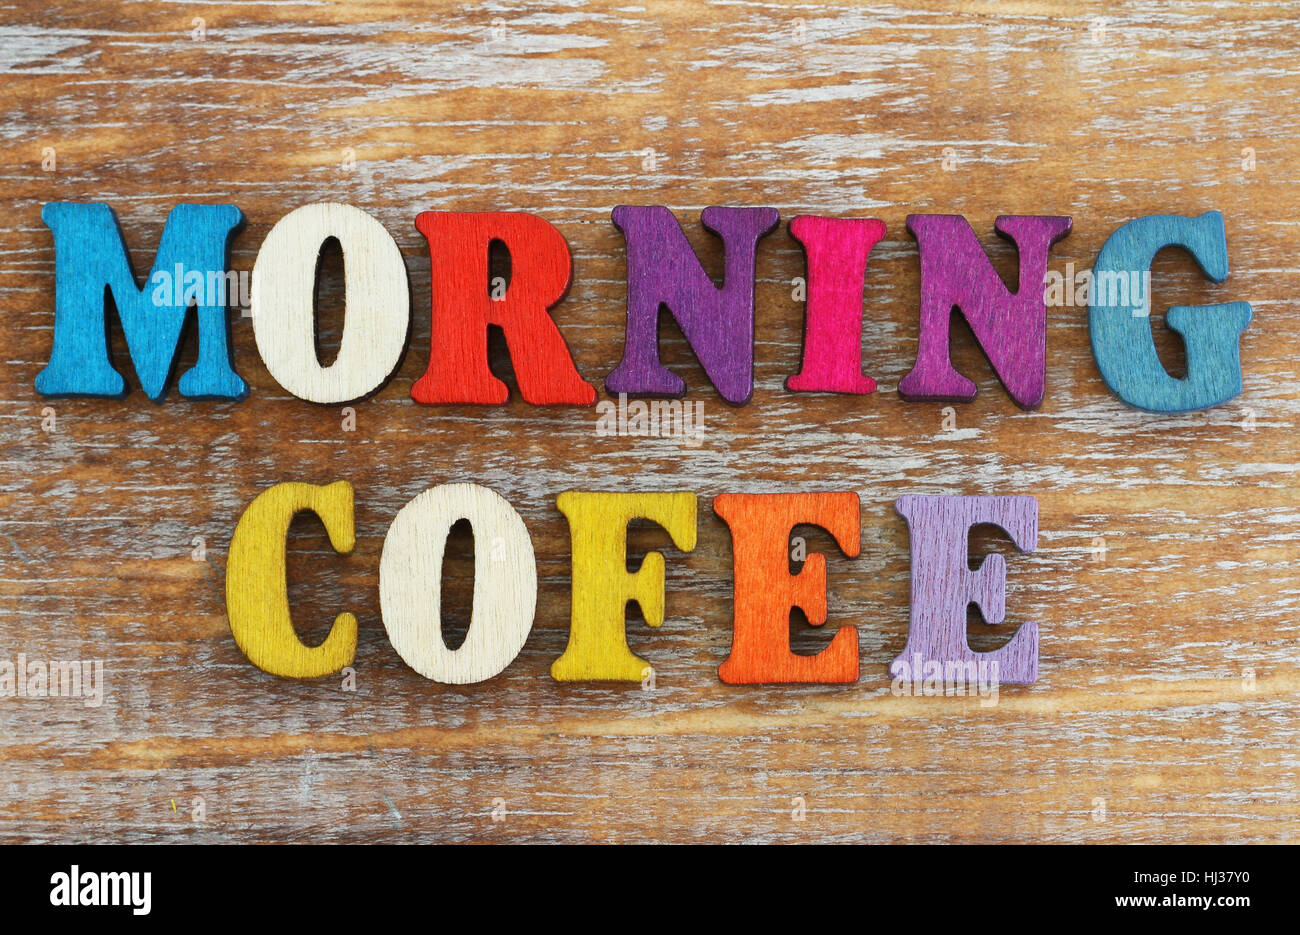 El café de la mañana ha escrito con letras de colores sobre la superficie de madera rústica Foto de stock